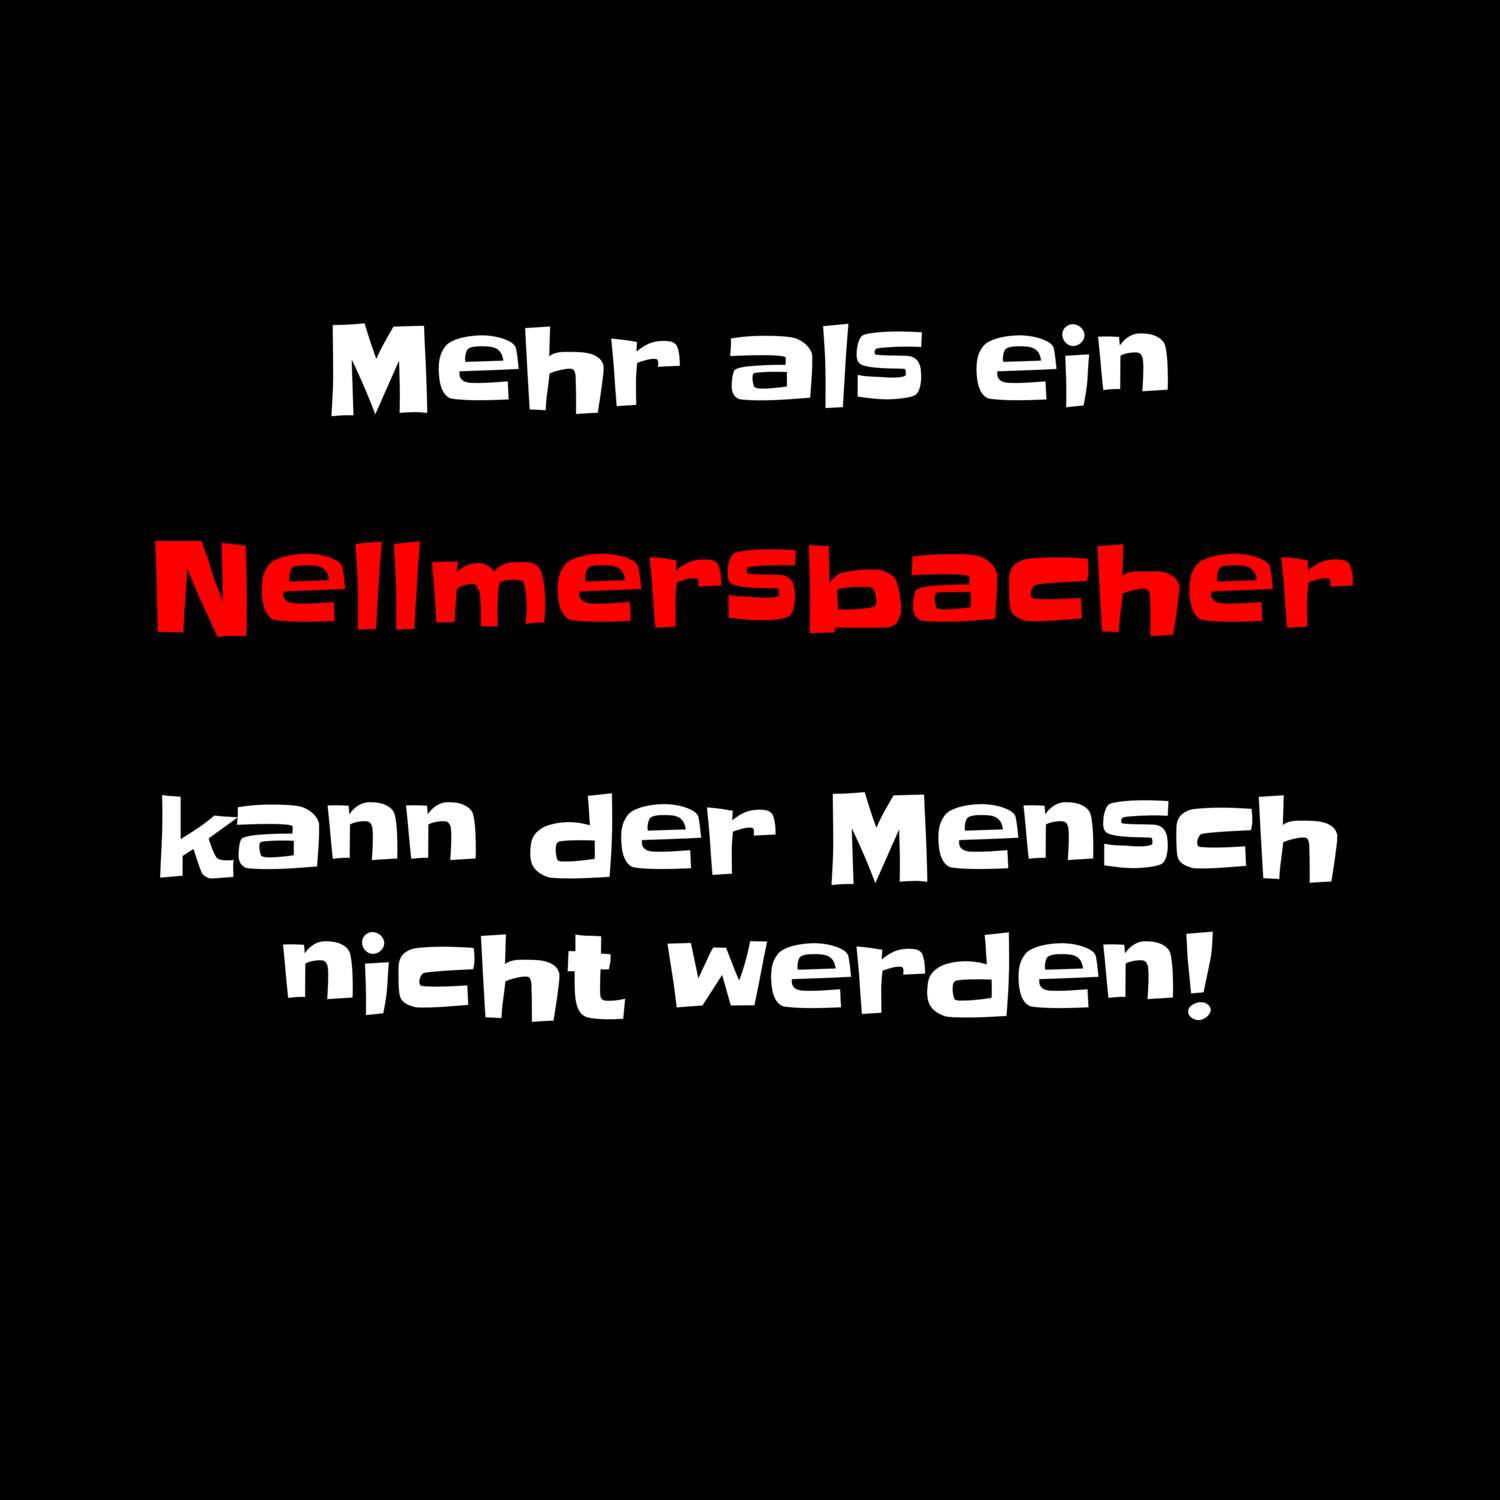 Nellmersbach T-Shirt »Mehr als ein«